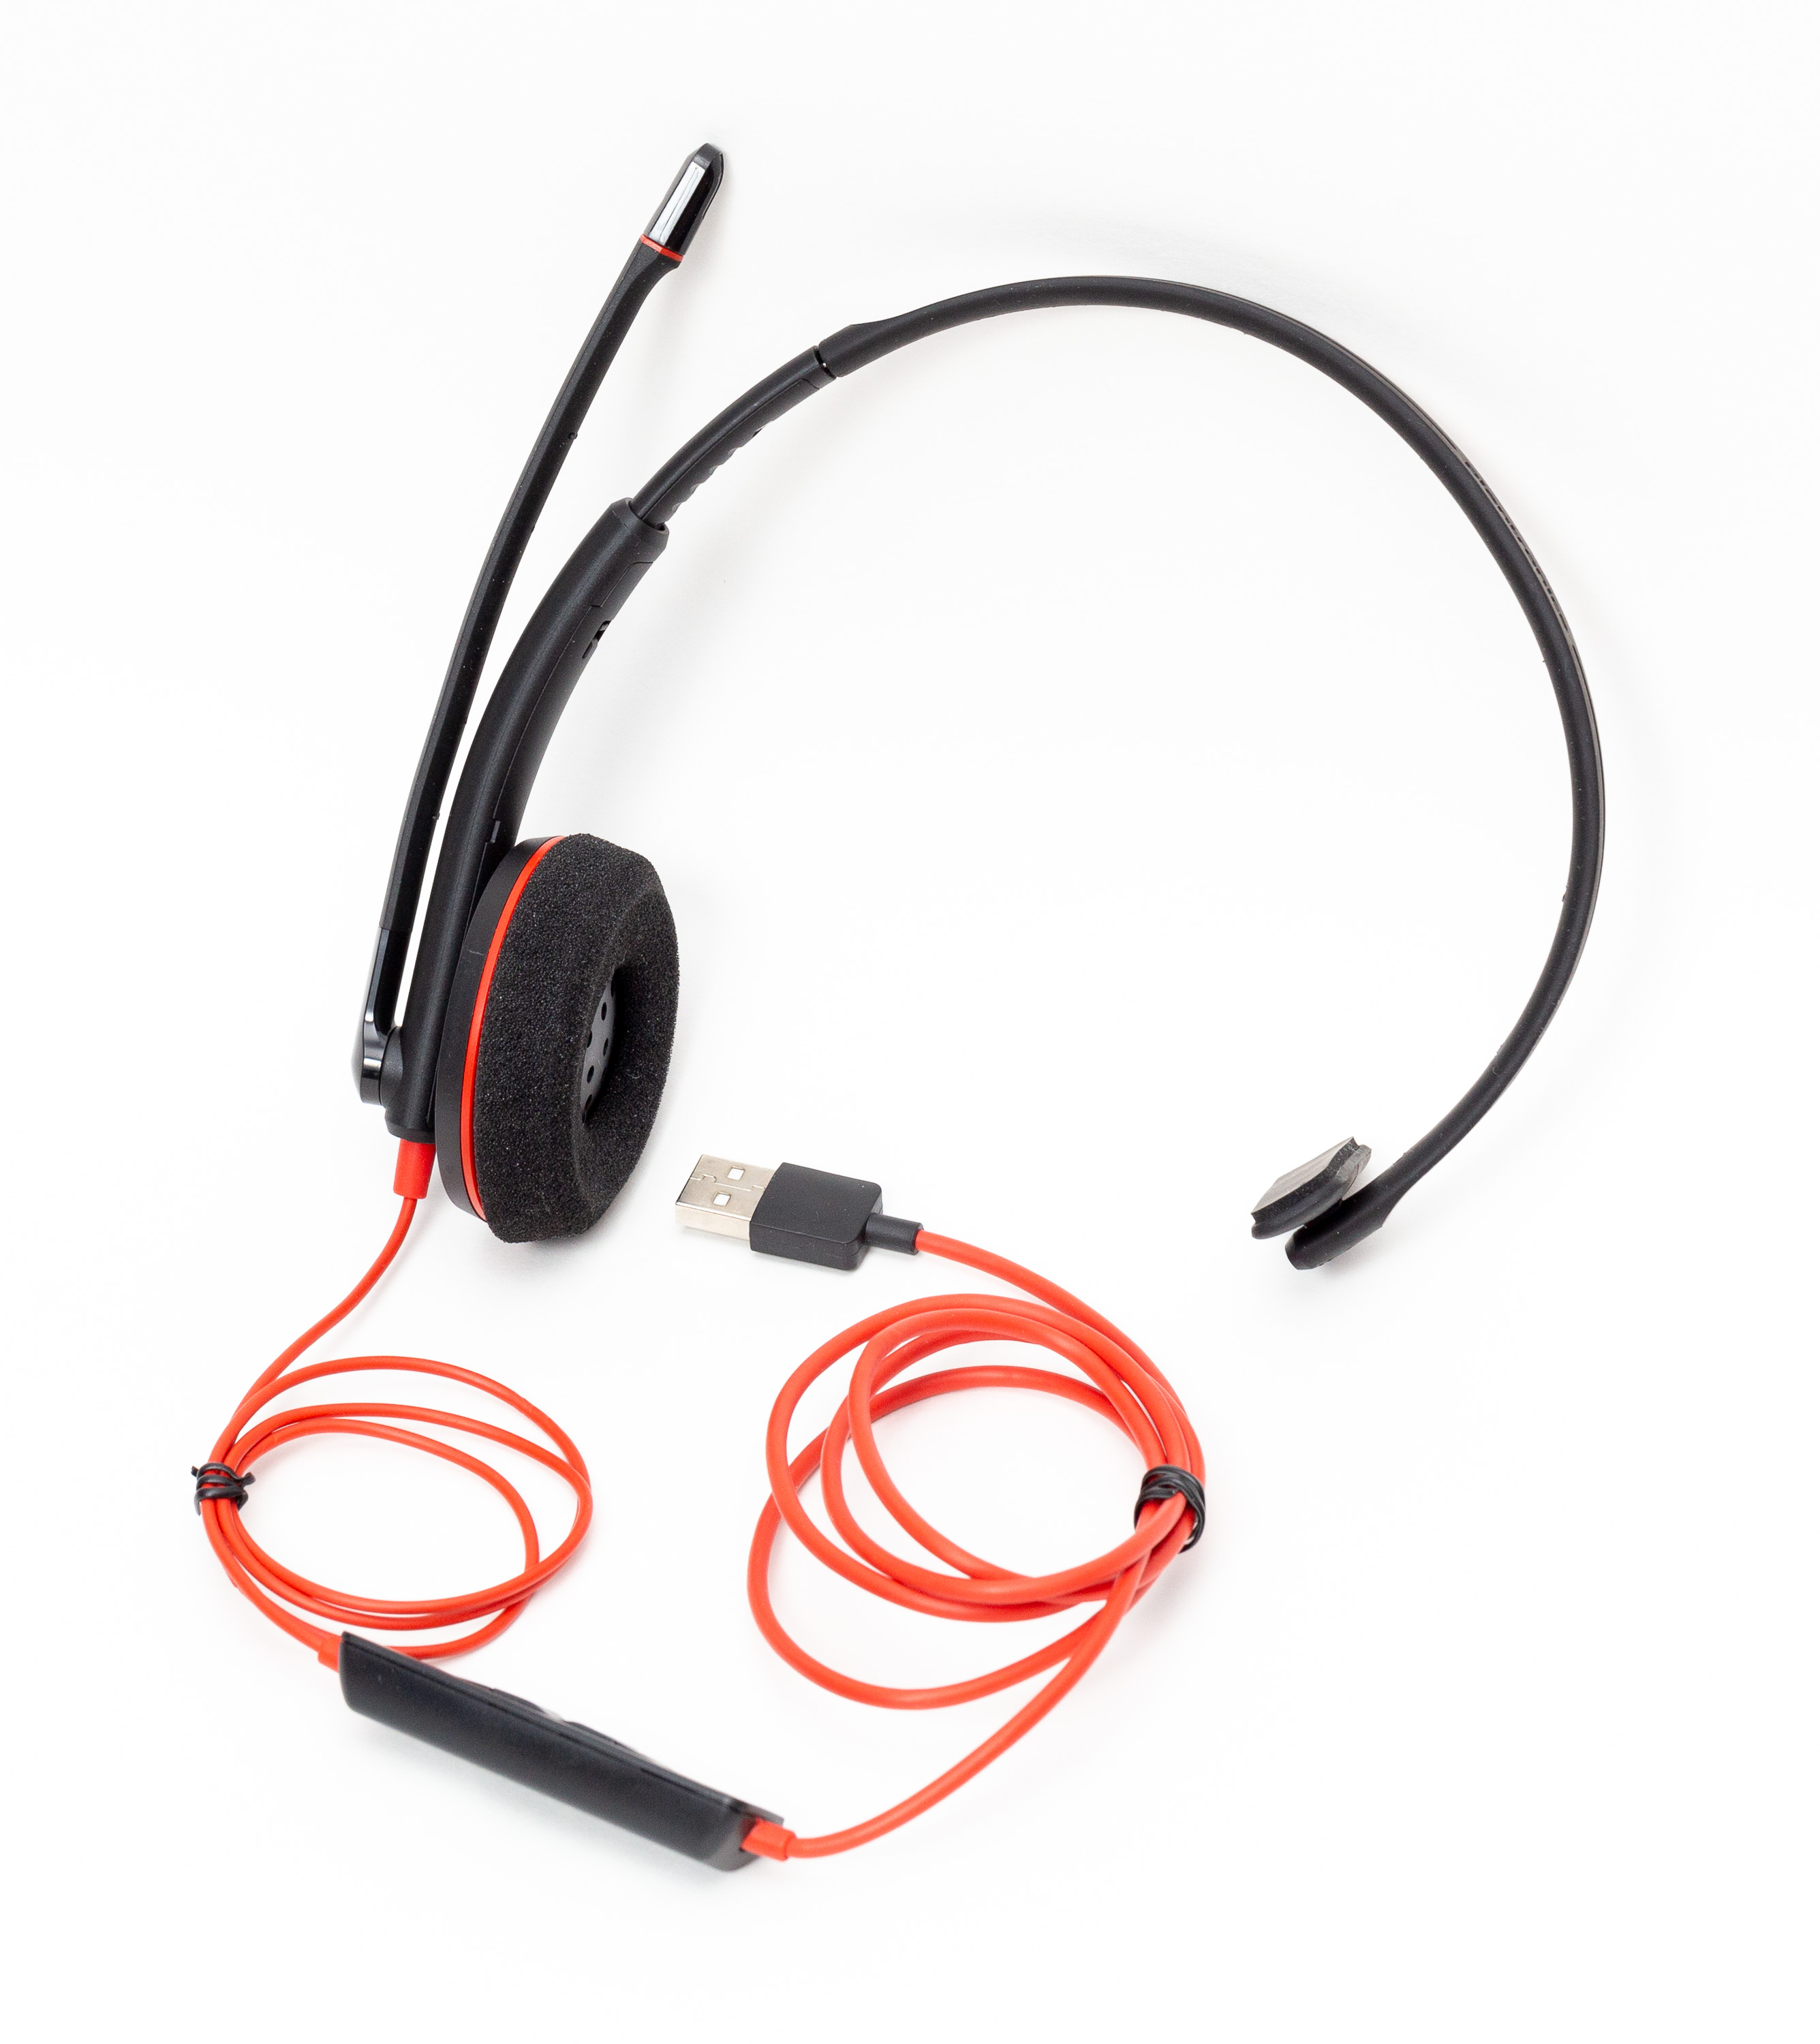 Plantronics Blackwire C3210 headset